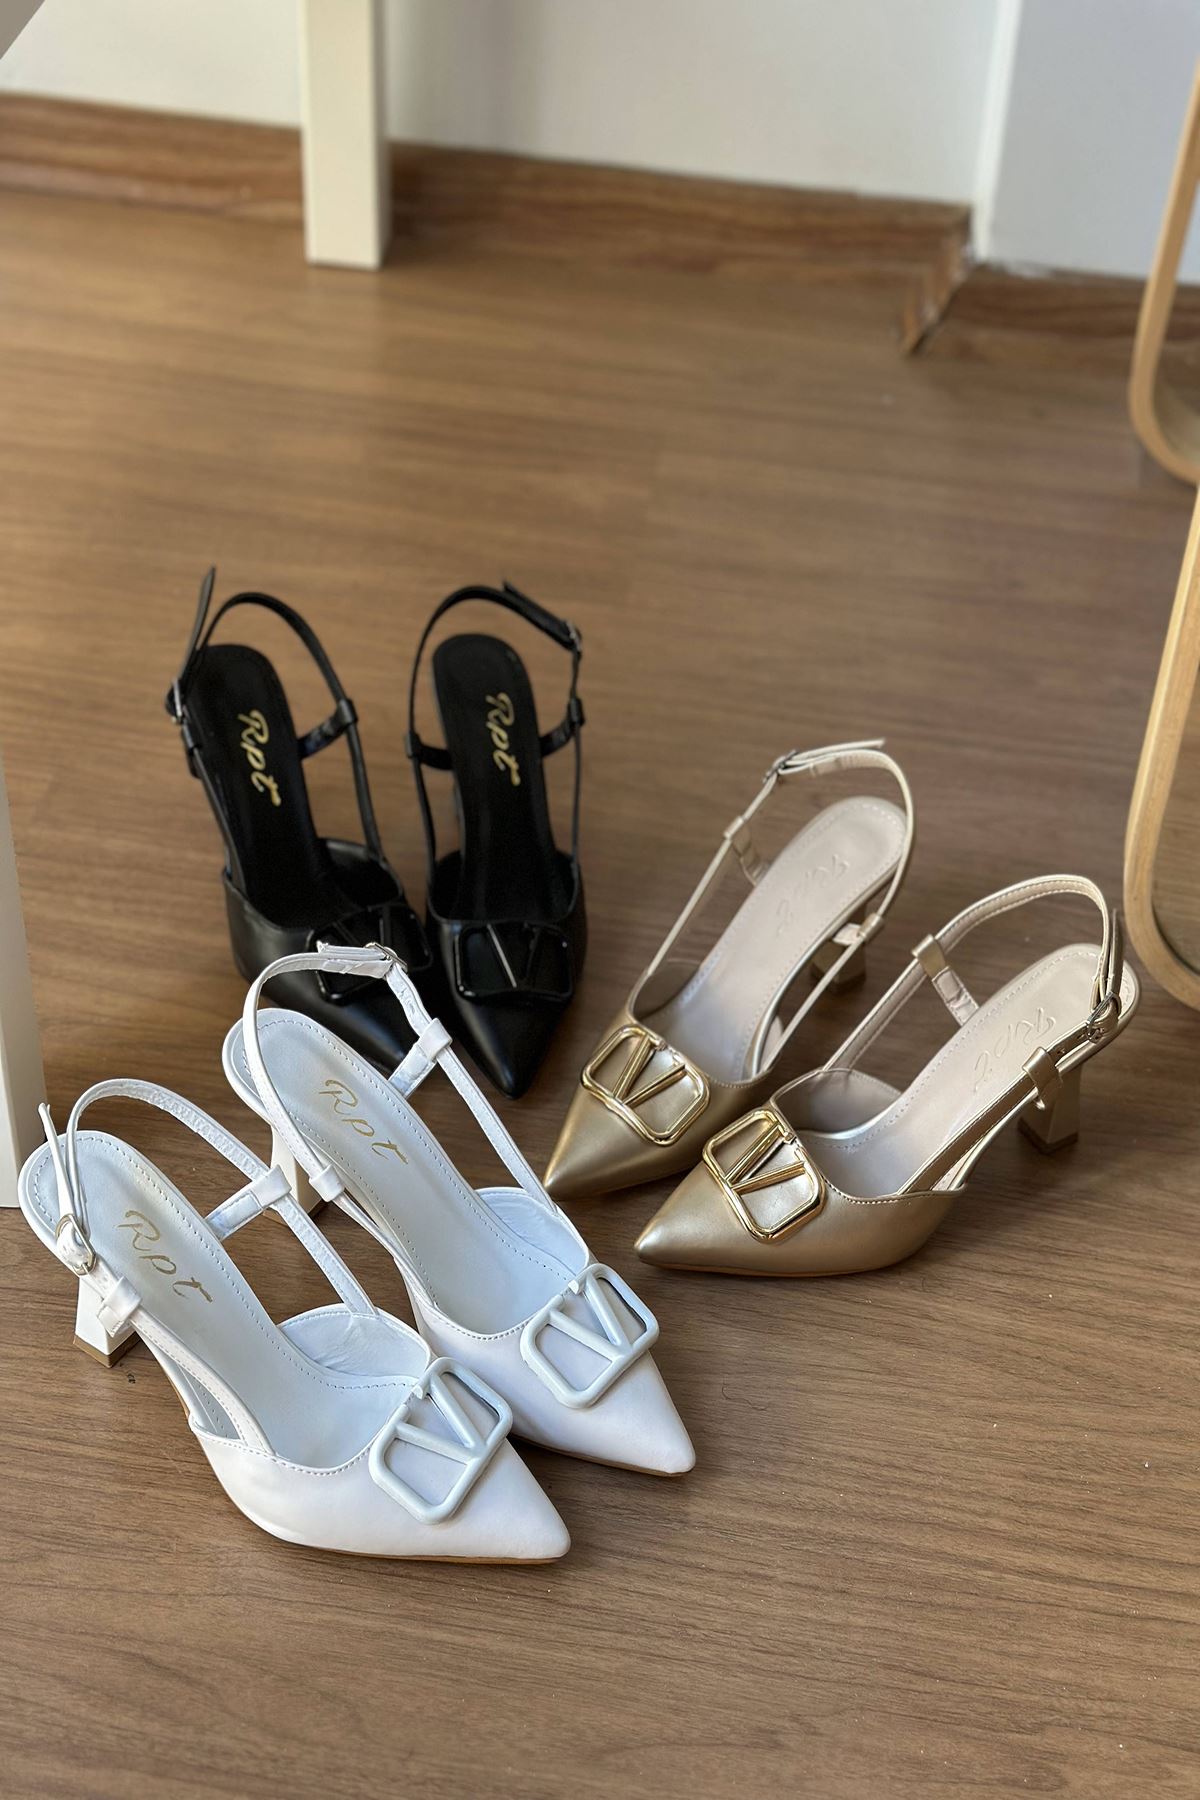 Mida Shoes Y3033 Beyaz Deri Tokalı Kadın Topuklu Ayakkabı